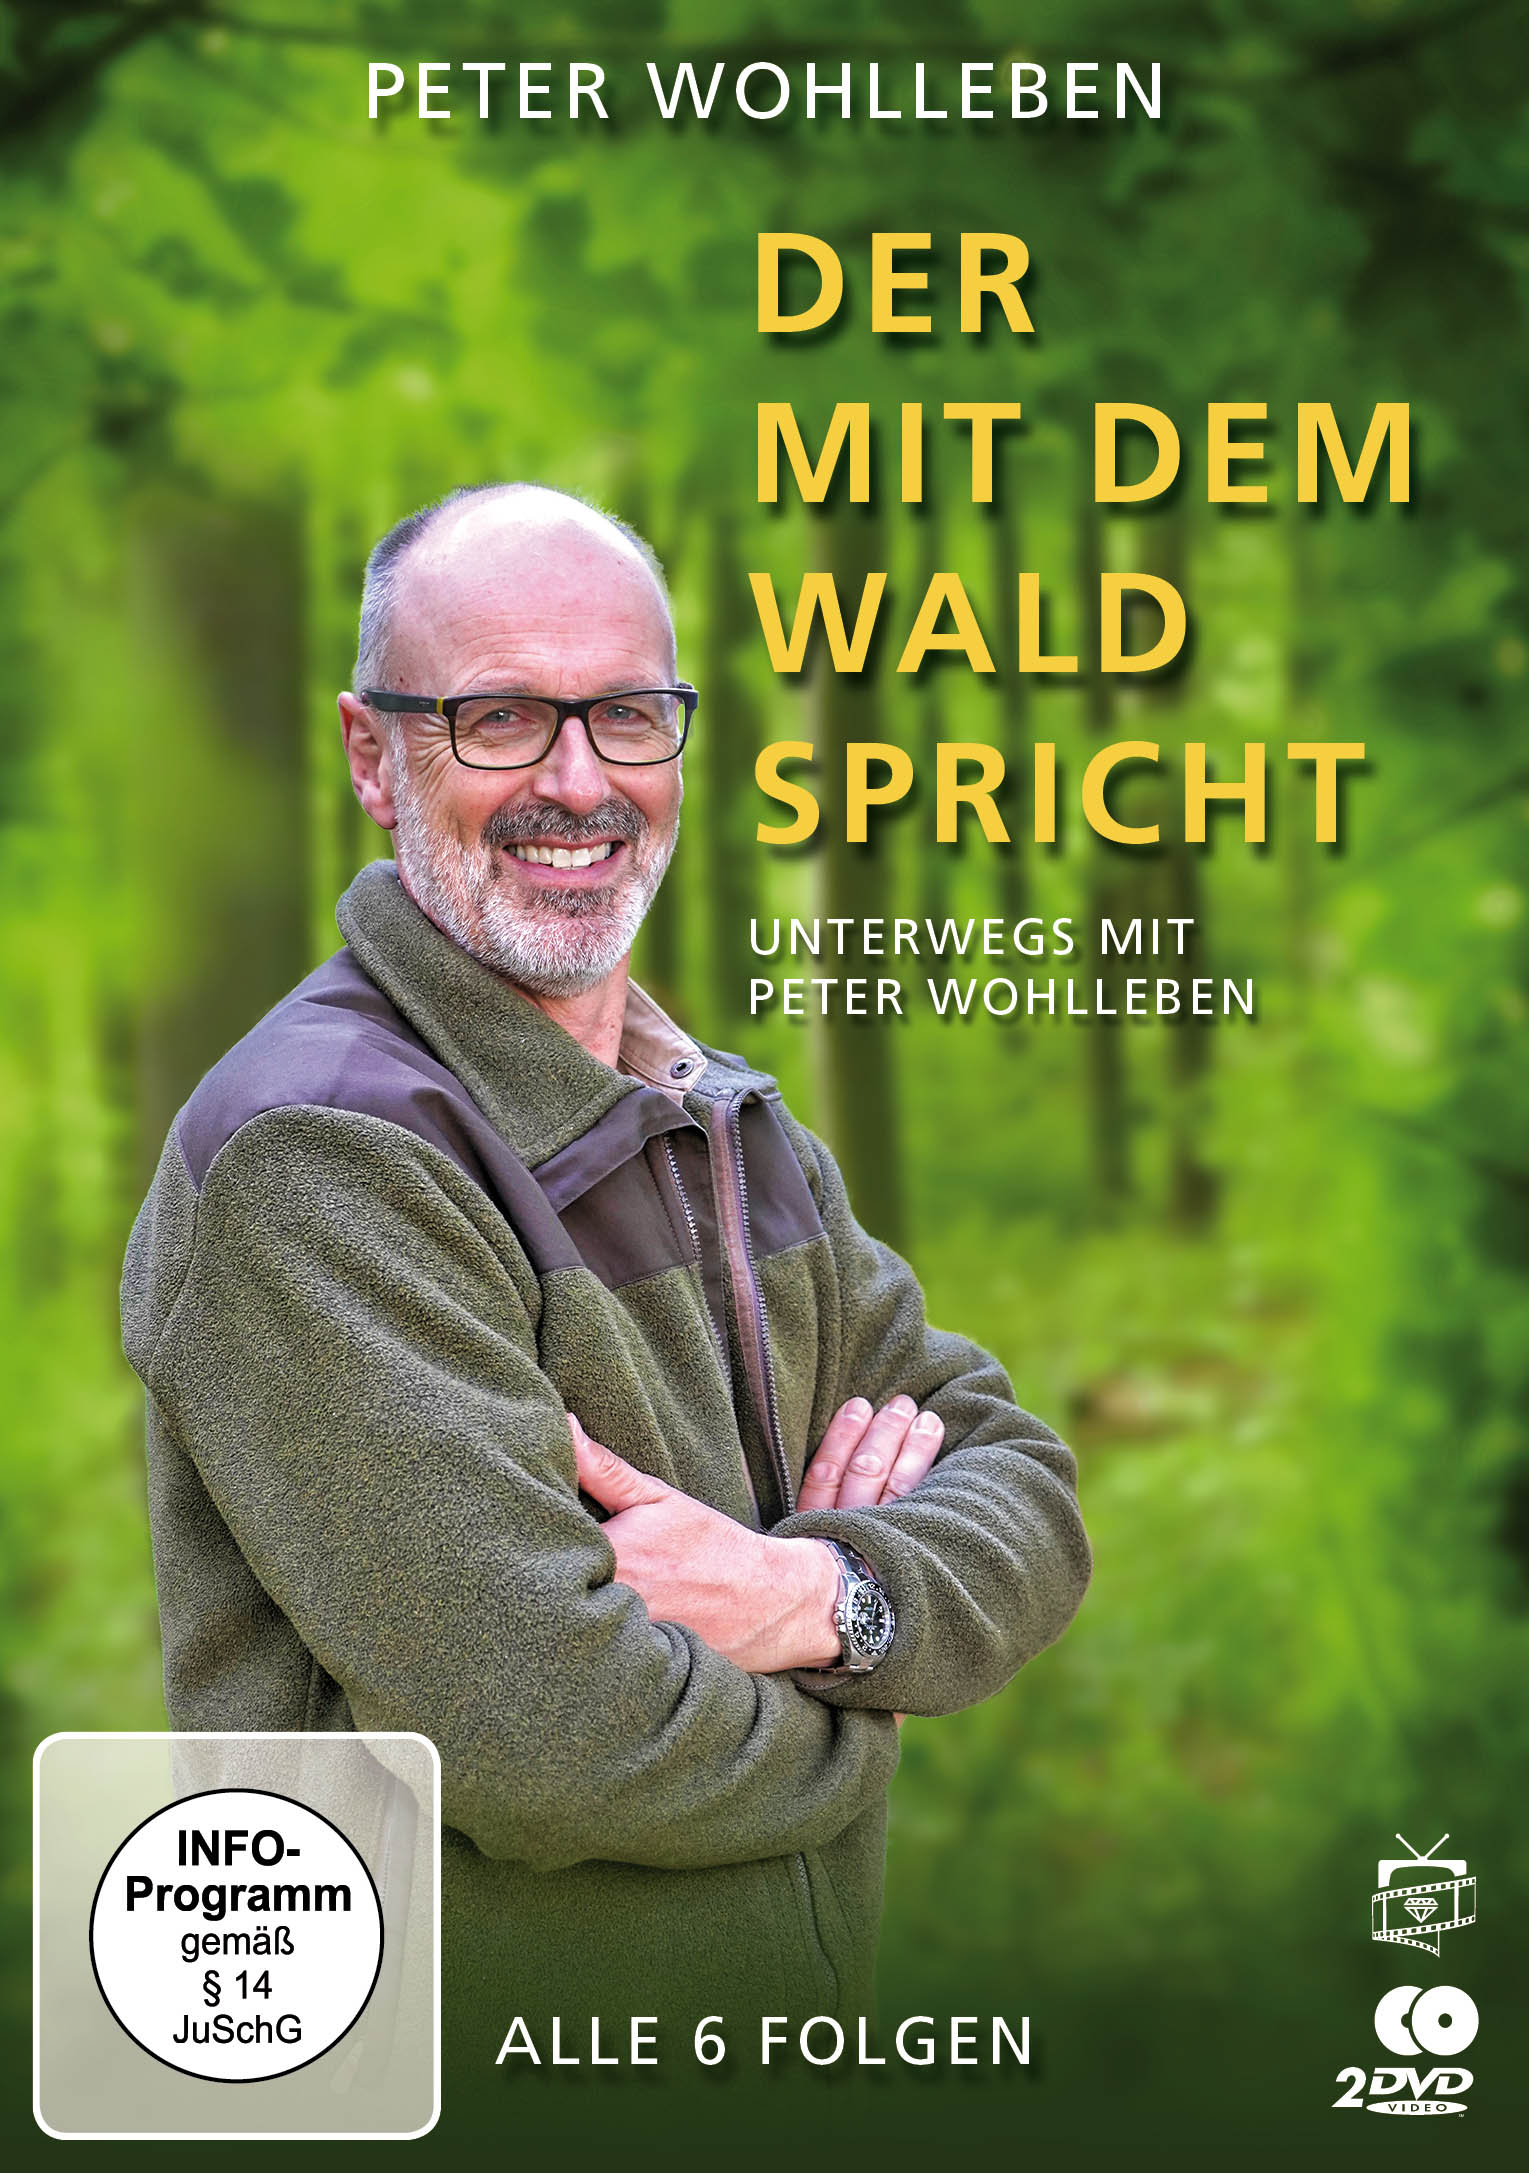 Der mit Unterwegs dem Wohlleben Wald - Peter spricht DVD mit